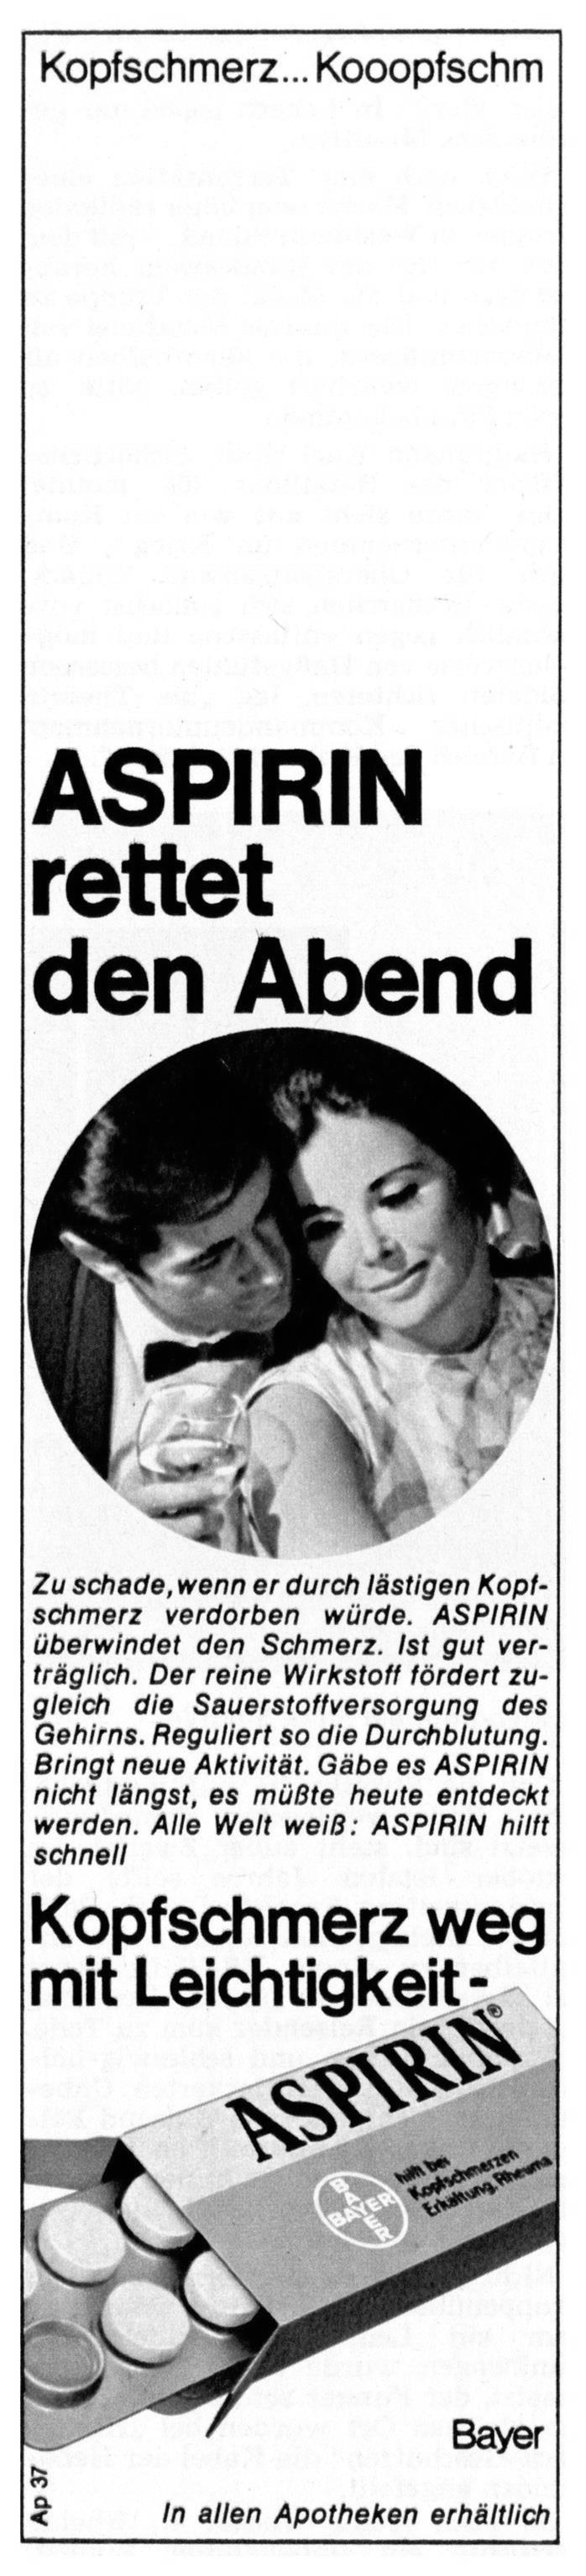 Aspirin 1969 0.jpg